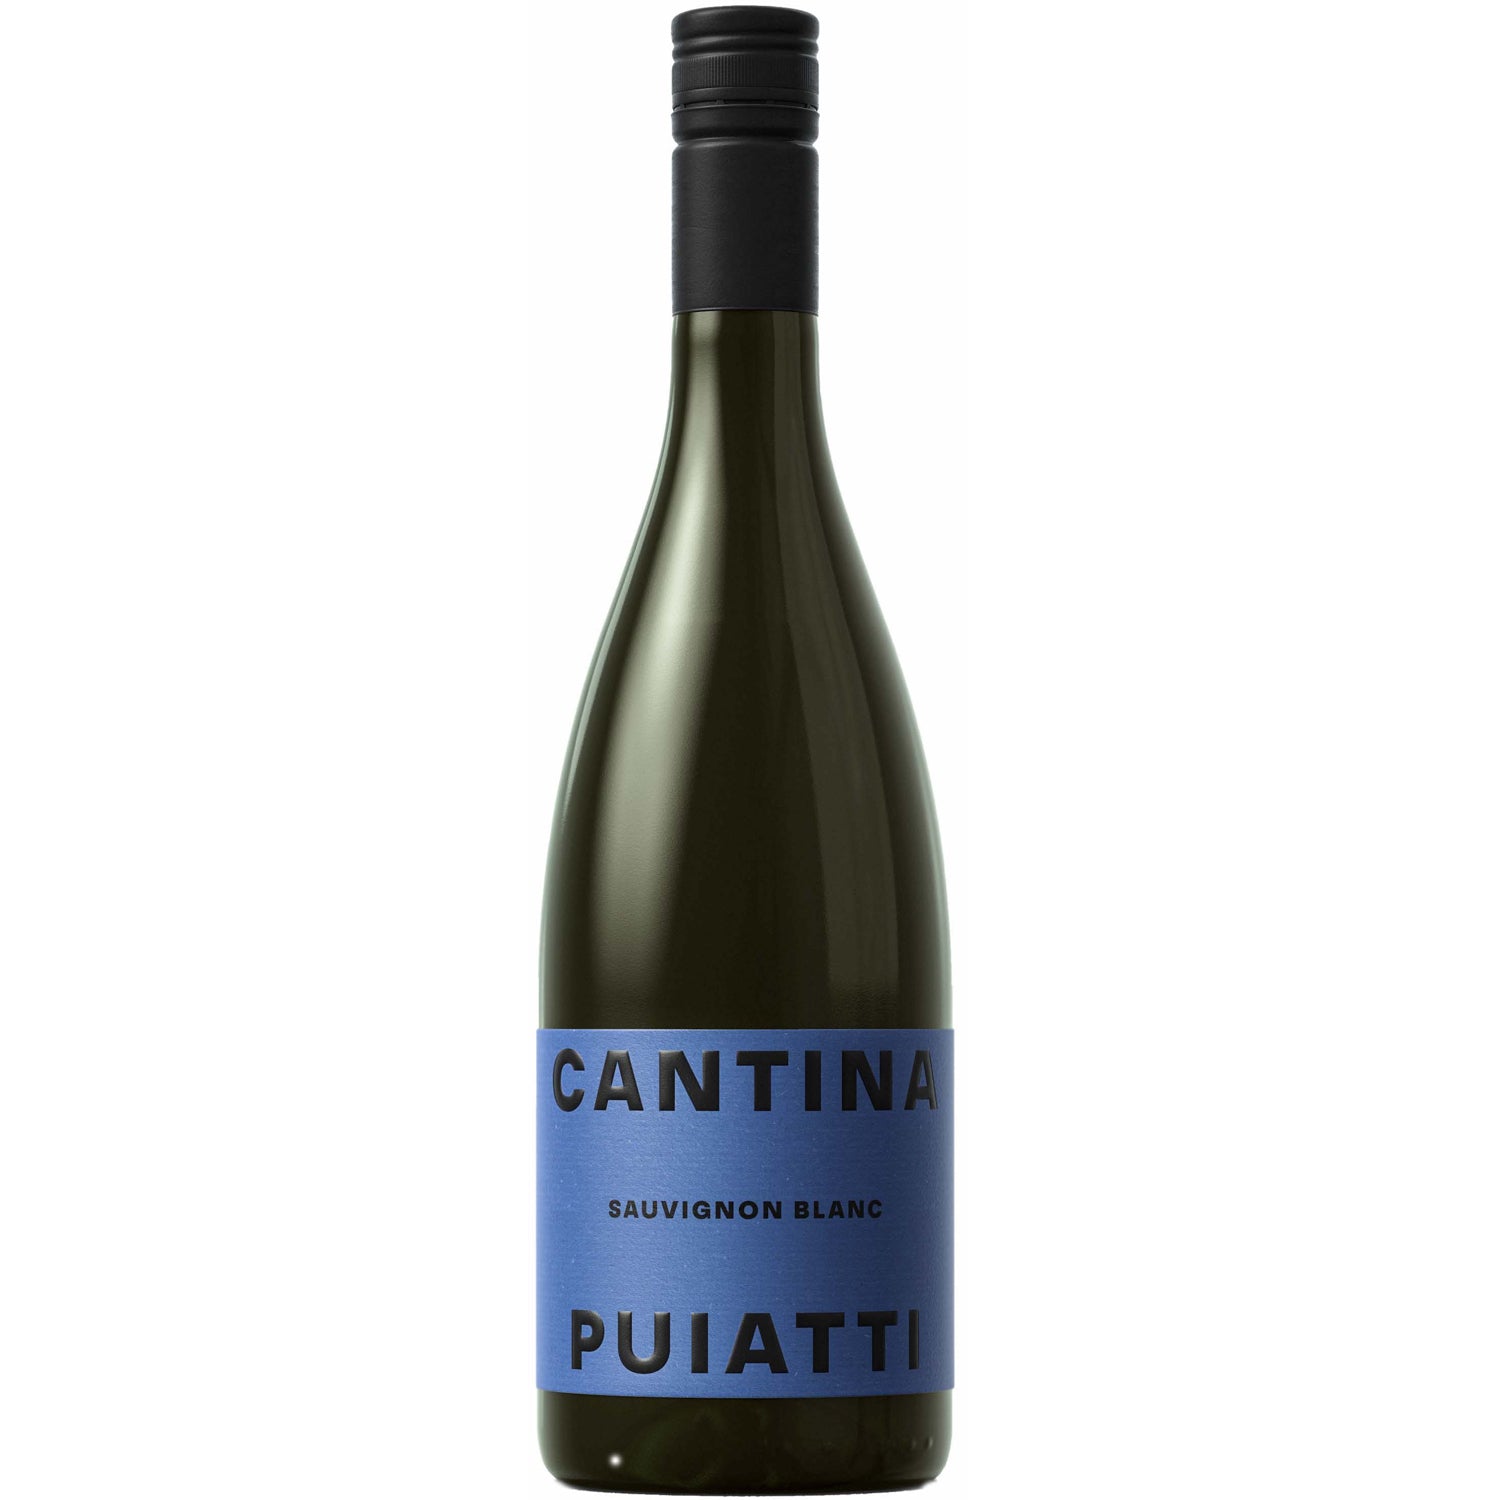 Cantina Puiatti Sauvignon Blanc [750ml]